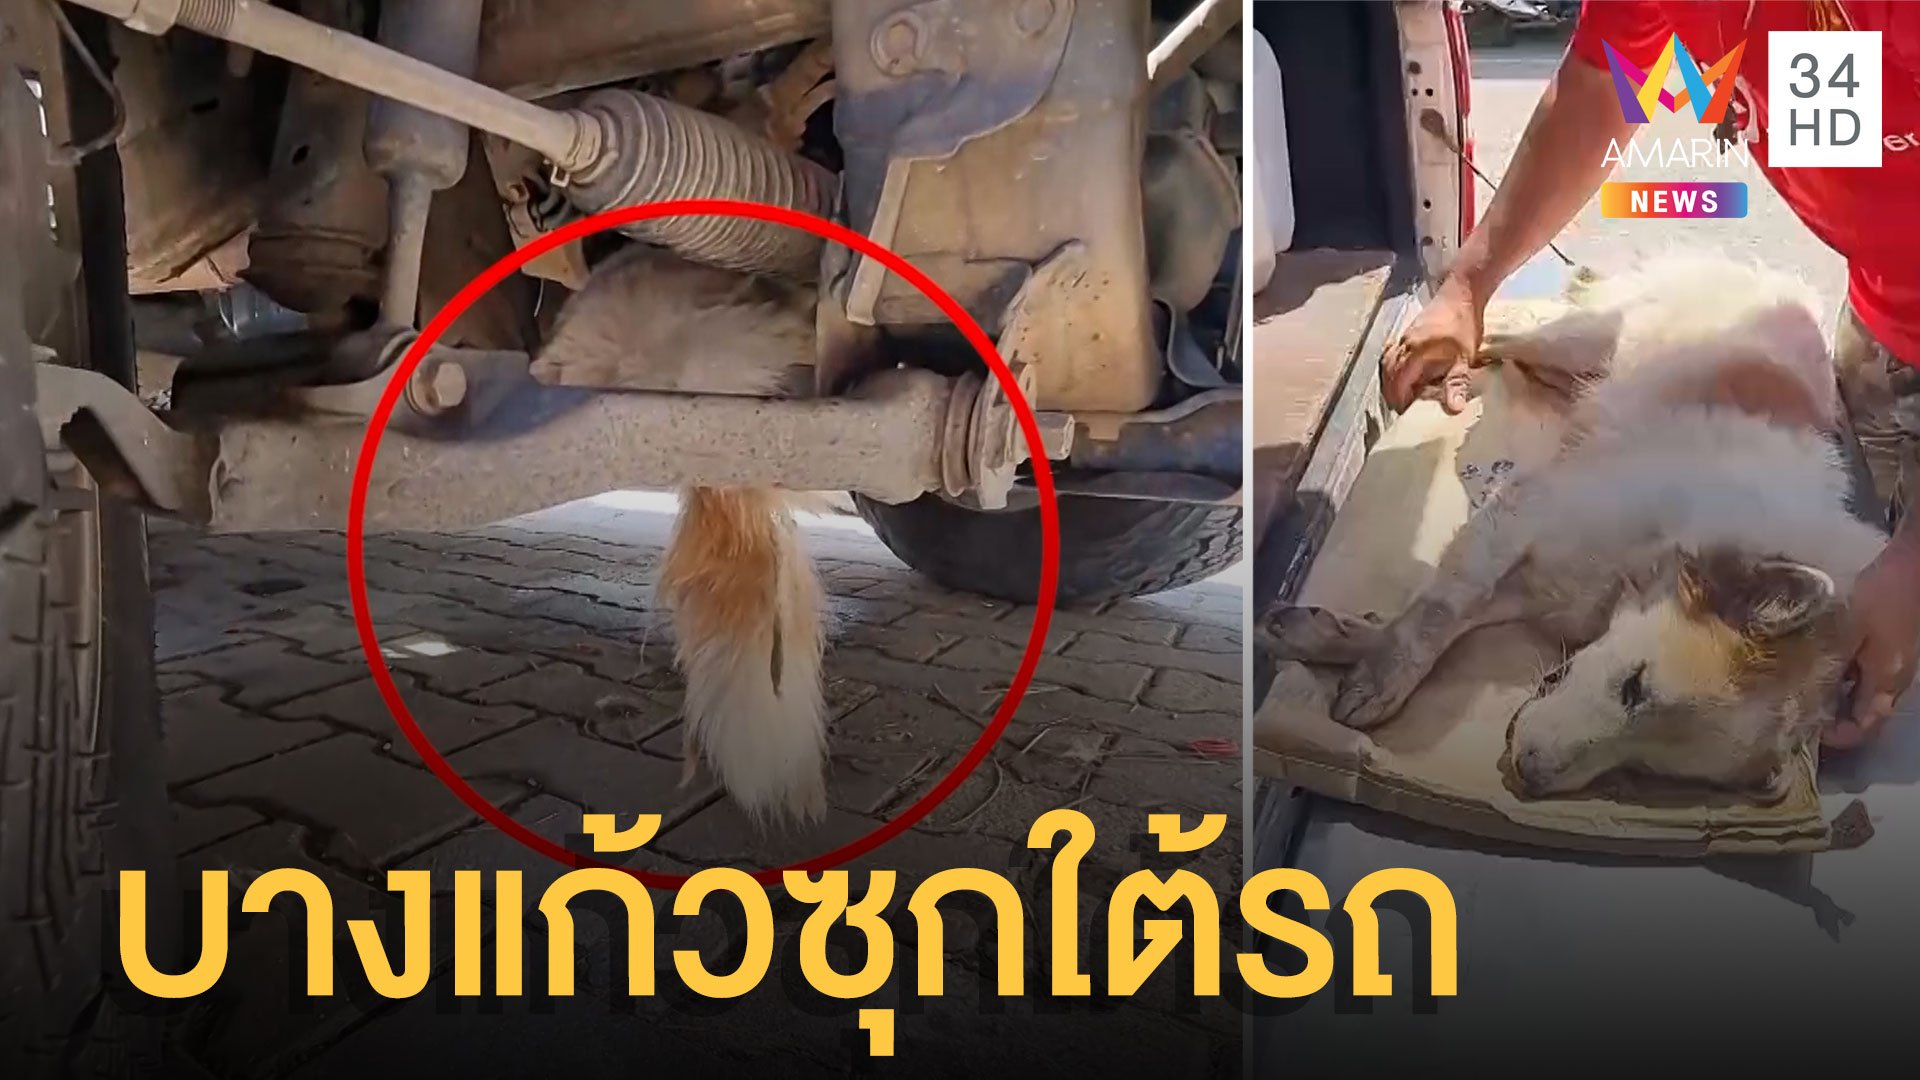 หมาบางแก้วซุกใต้เครื่องรถกระบะ ต้องยิงยาสลบช่วยเพราะมันขู่ | ข่าวเที่ยงอมรินทร์ | 18 ก.ค. 65 | AMARIN TVHD34